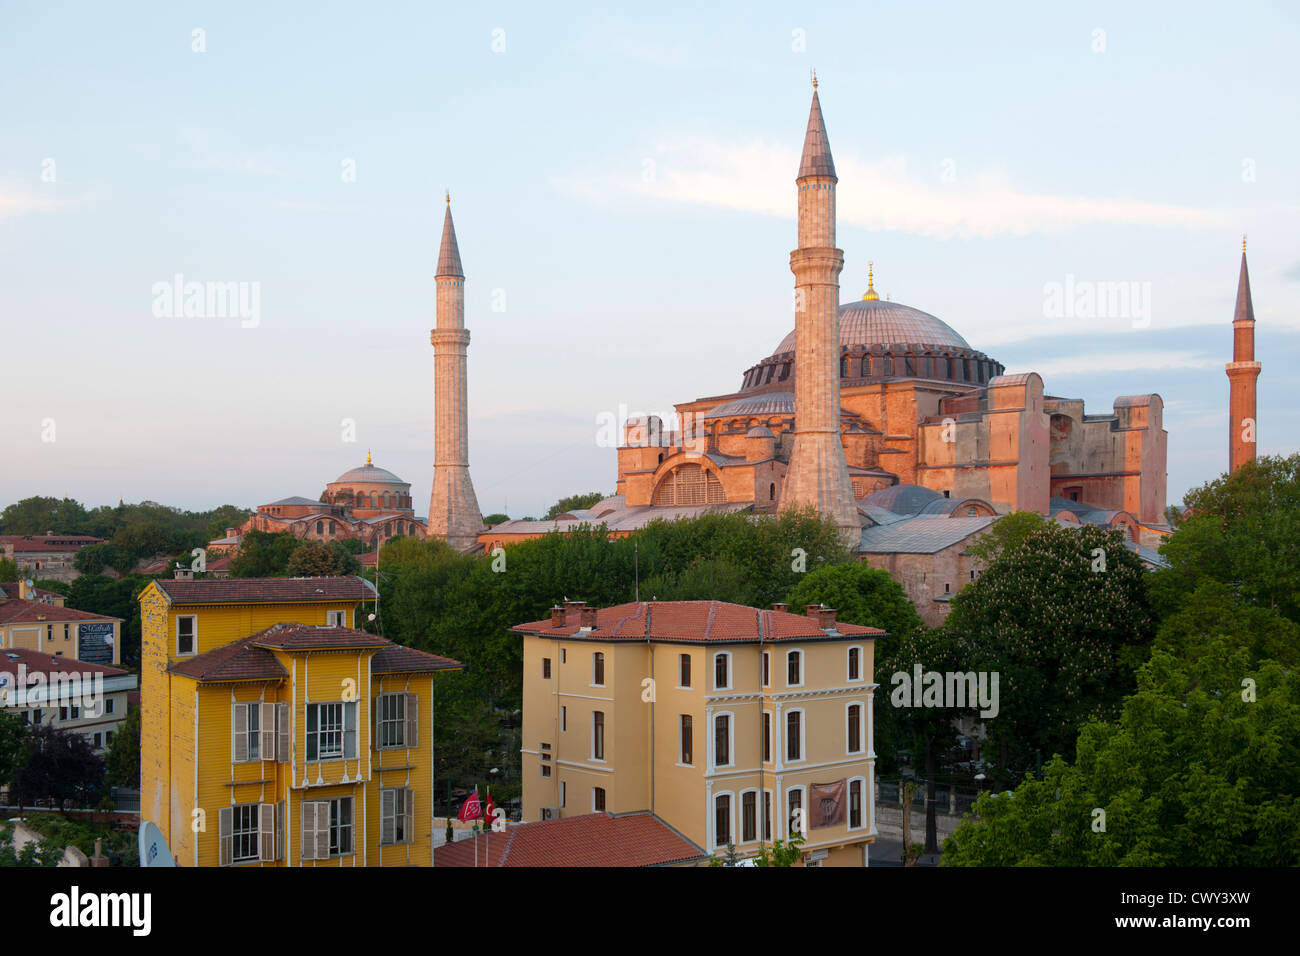 Türkei, Istanbul, Sultanahmet, die Hagia Sophia ist eine ehemalige Kirche, spätere Moschee und heute ein Museum. Stock Photo